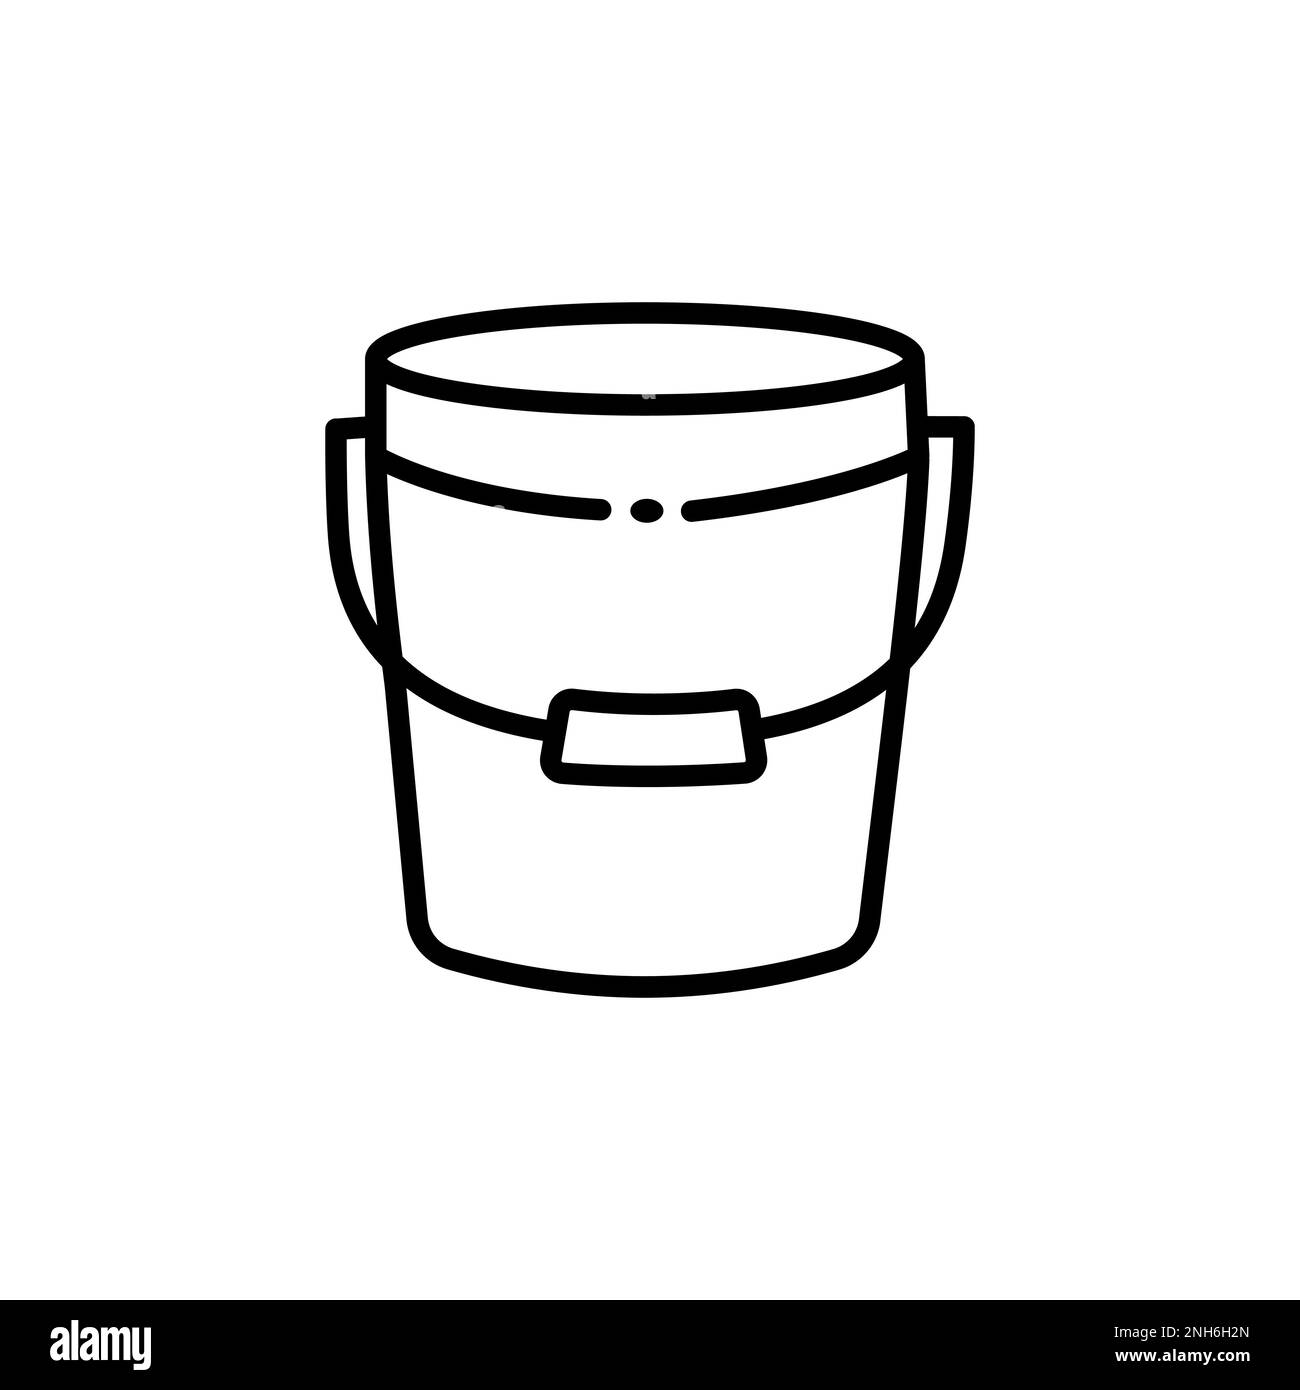 Icona vuota del bucket dalla collezione Shapes Outline. Icona del secchiello vuota con linea sottile isolata su sfondo bianco. Illustrazione Vettoriale